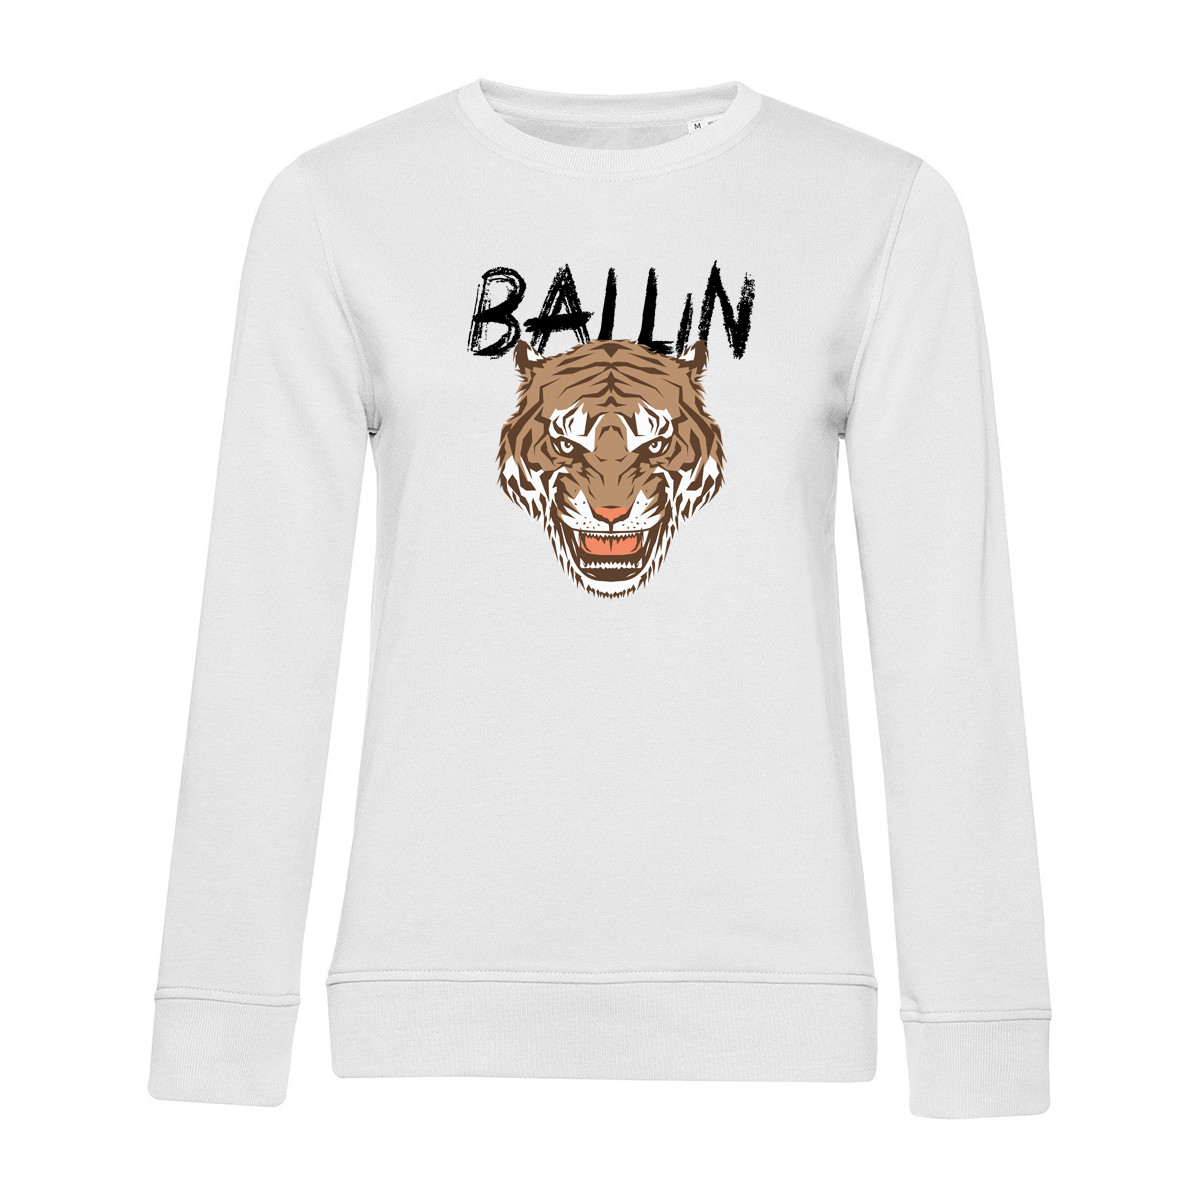 Kleidung Damen Sweatshirts Ballin Est. 2013 Tiger Sweater Weiss